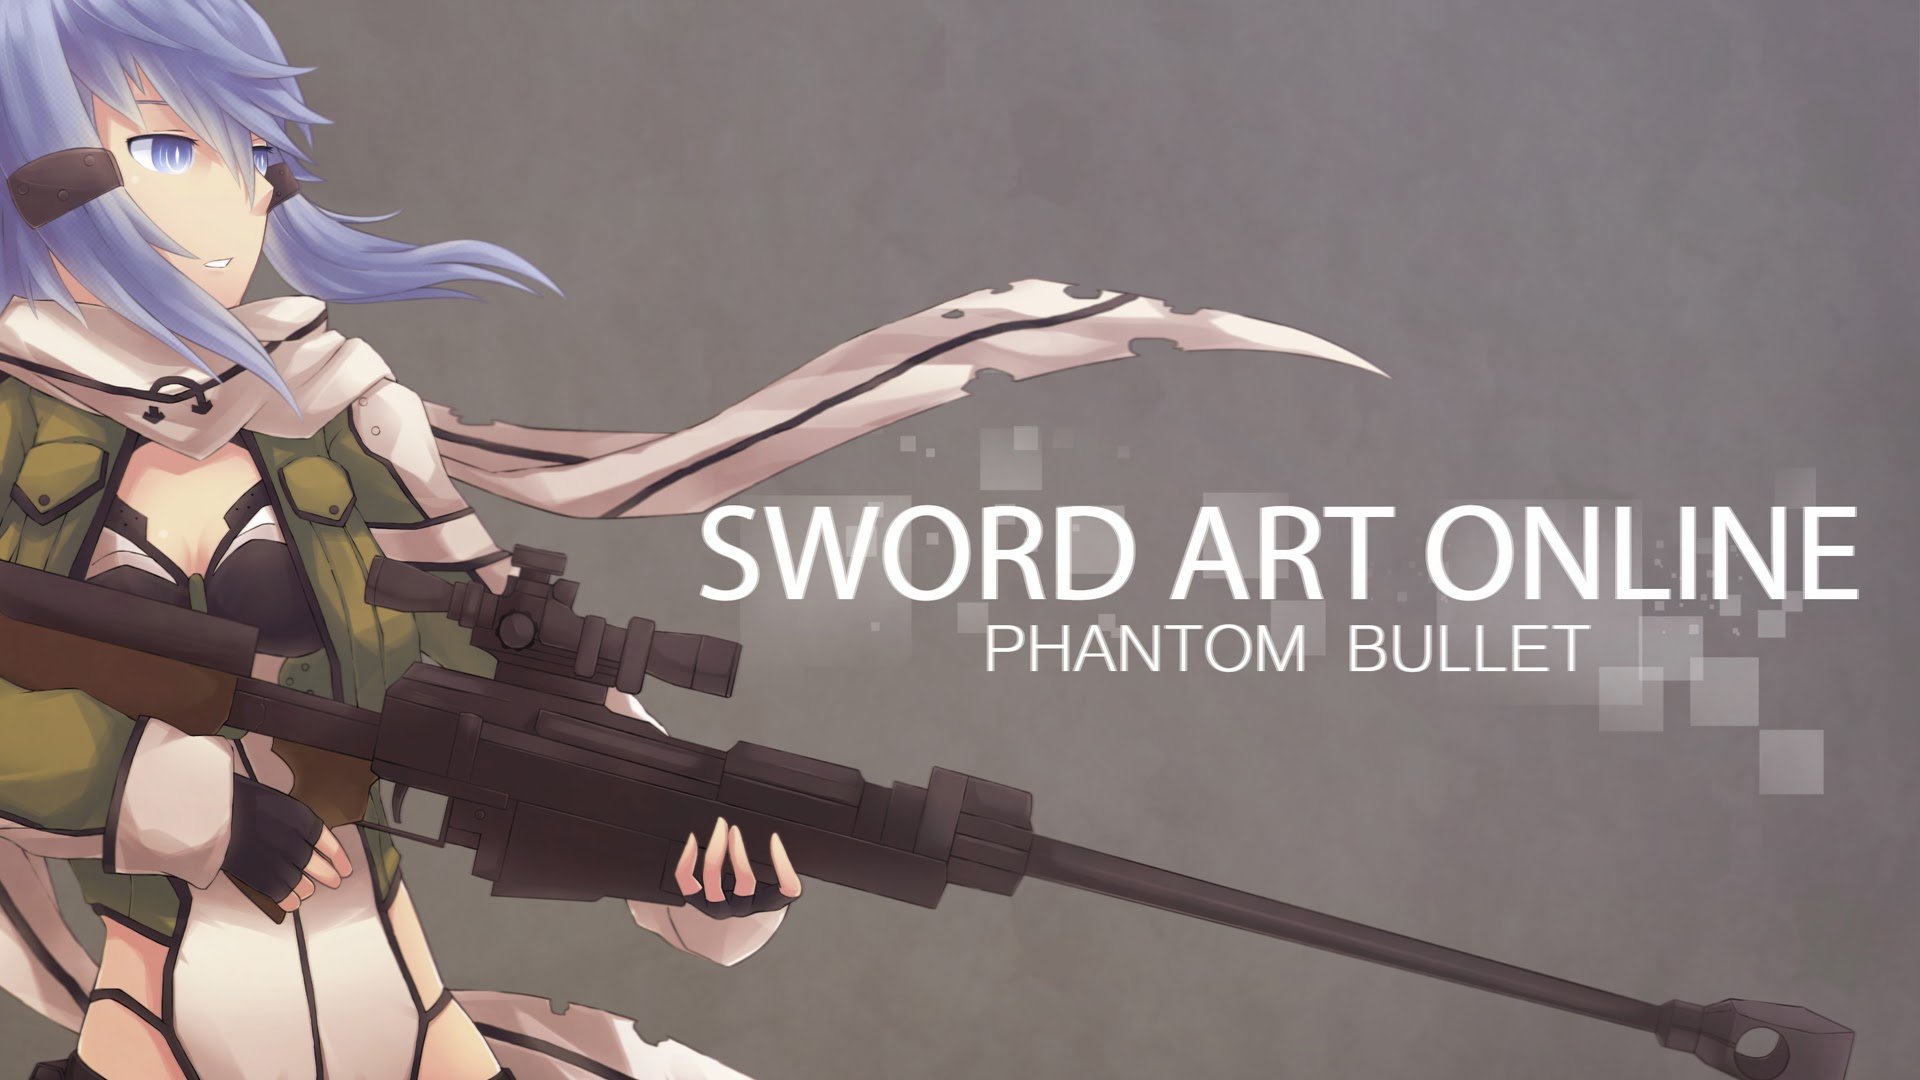 sinon sword art online 2 phantom bullet gun gale online anime 2014 SAO